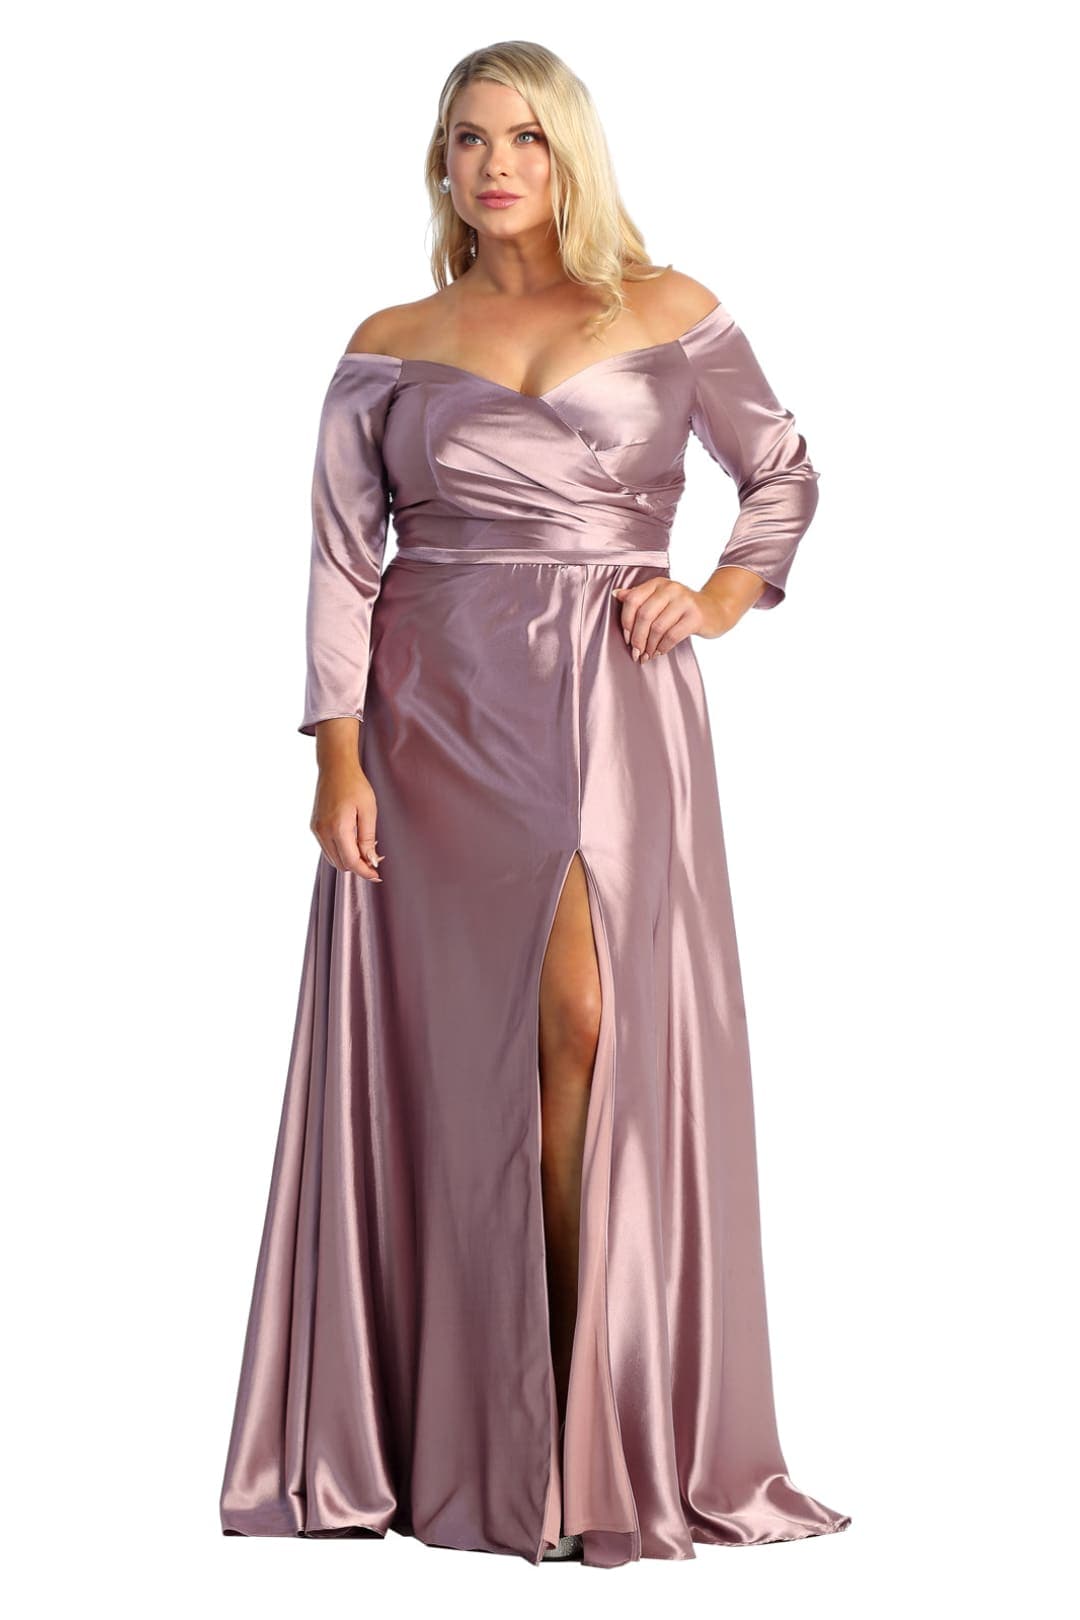 Plus Size Dress For A Wedding Guest - MAUVE / 4